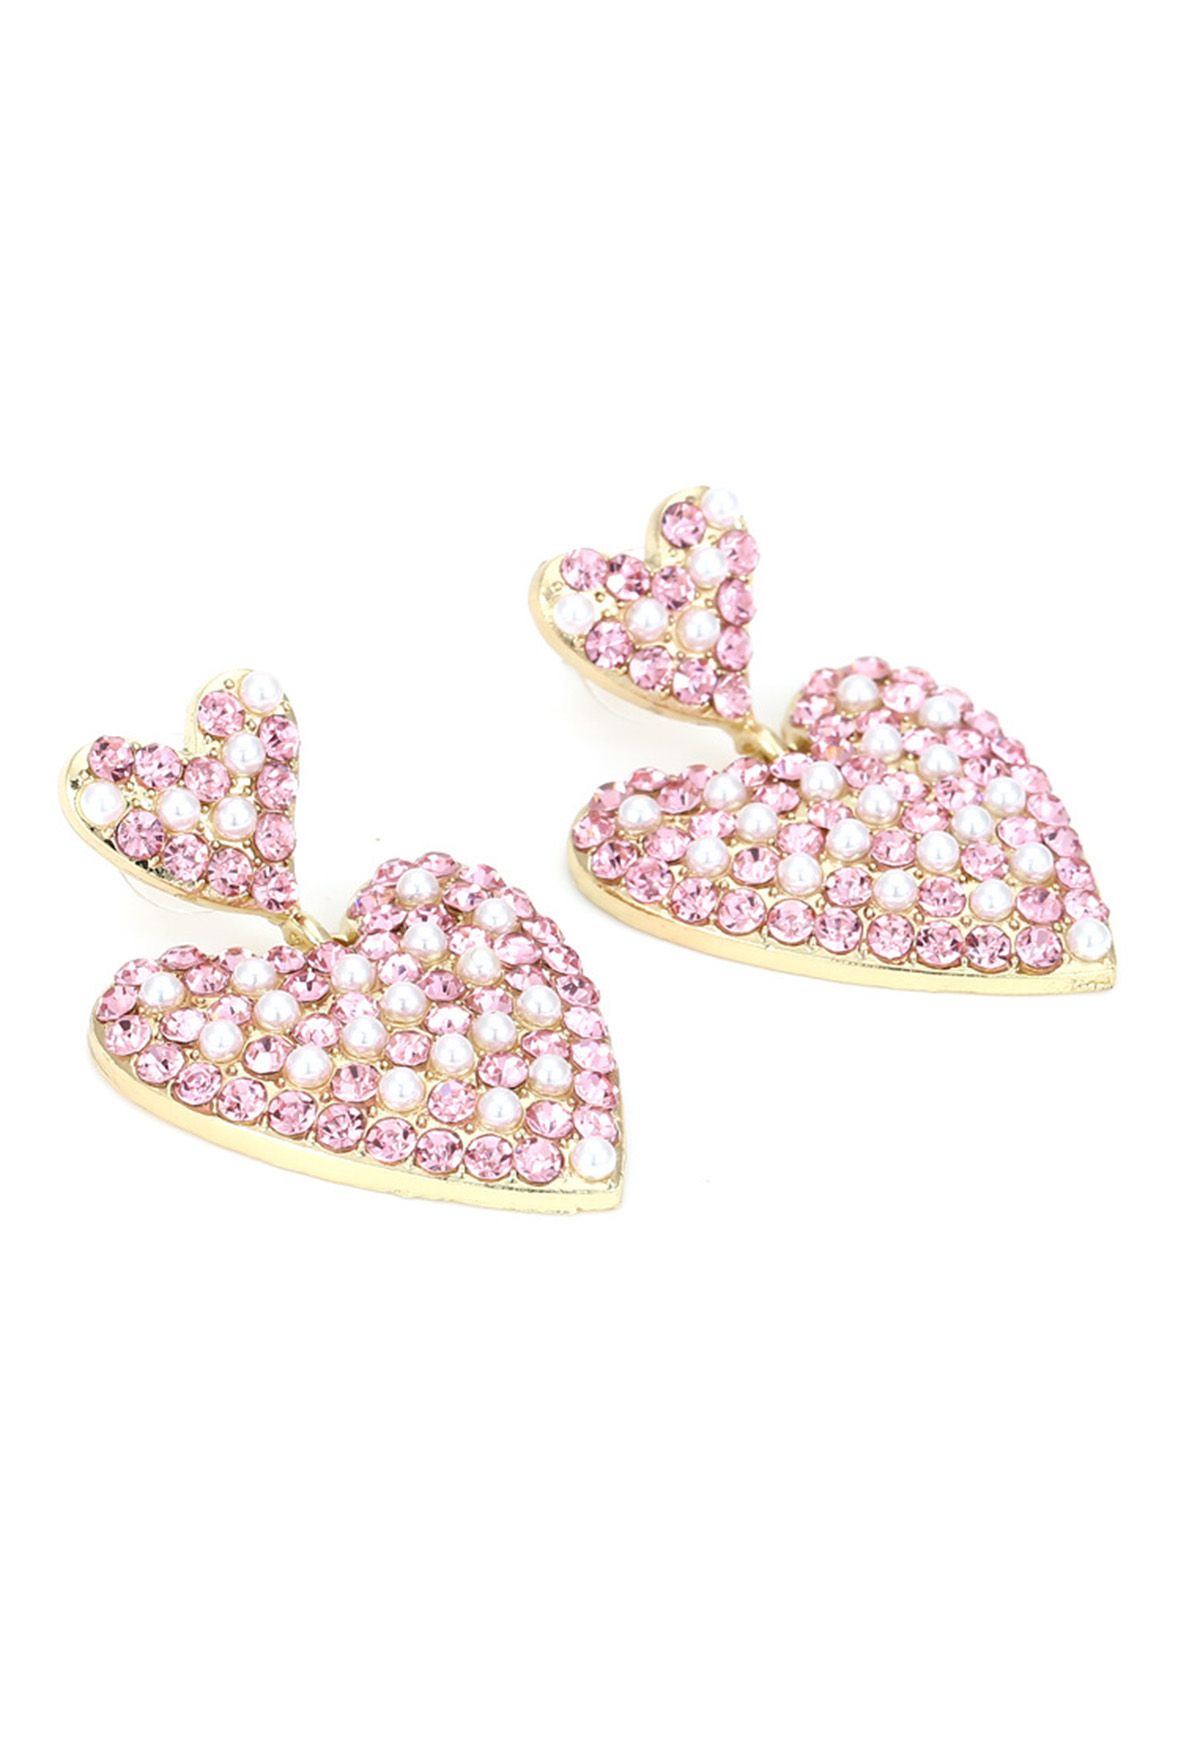 Lovely Pearl Heart Rhinestone Earrings